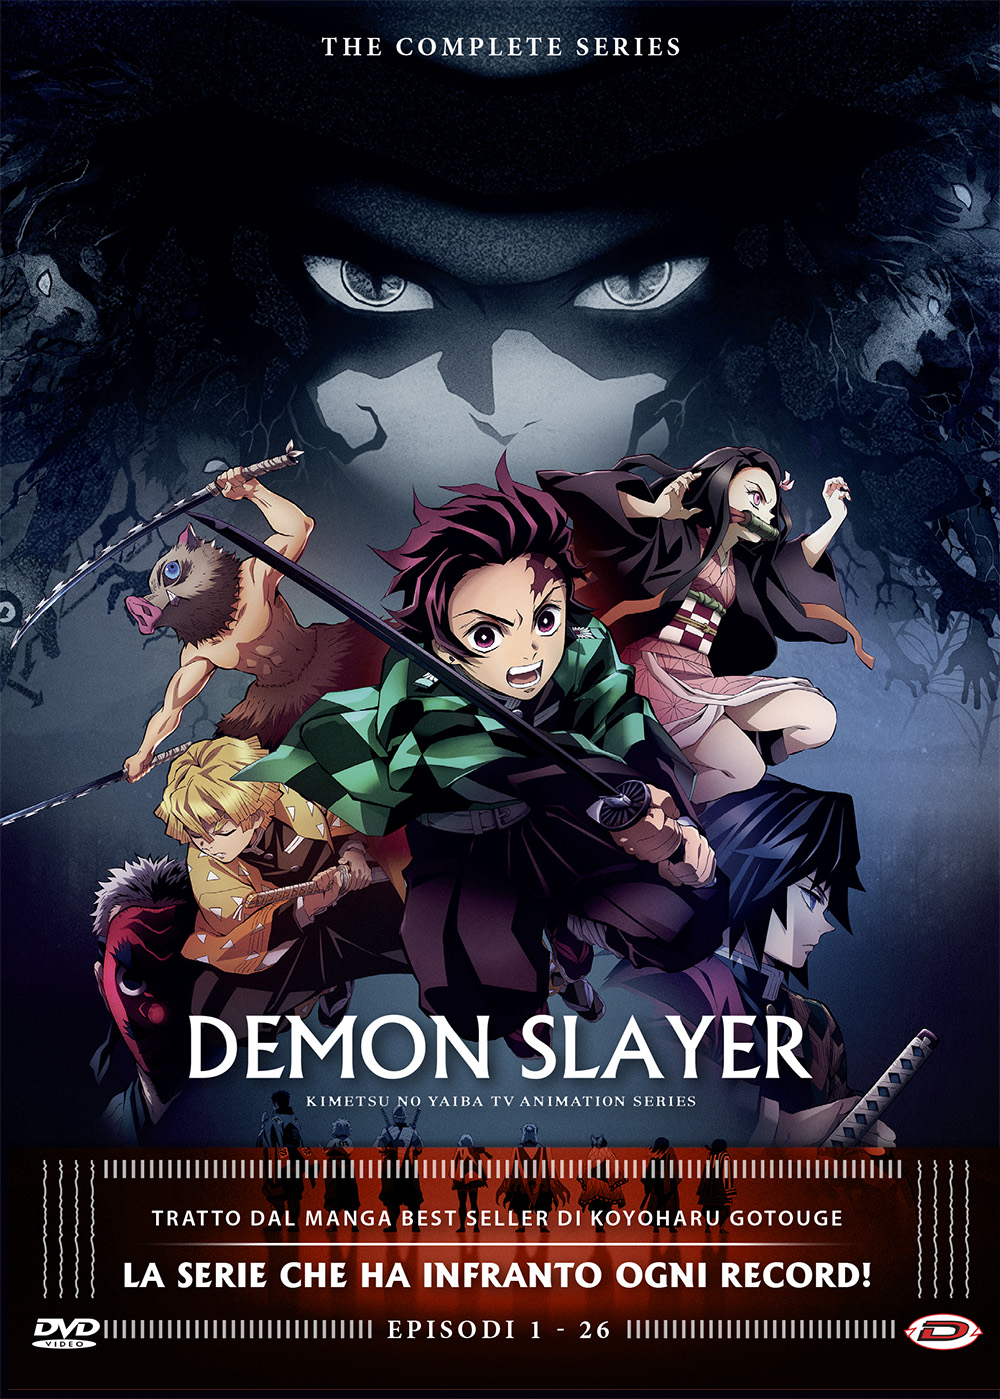 Dvd Demon Slayer - The Complete Series (Eps 01-26) (4 Dvd) NUOVO SIGILLATO, EDIZIONE DEL 31/03/2021 SUBITO DISPONIBILE